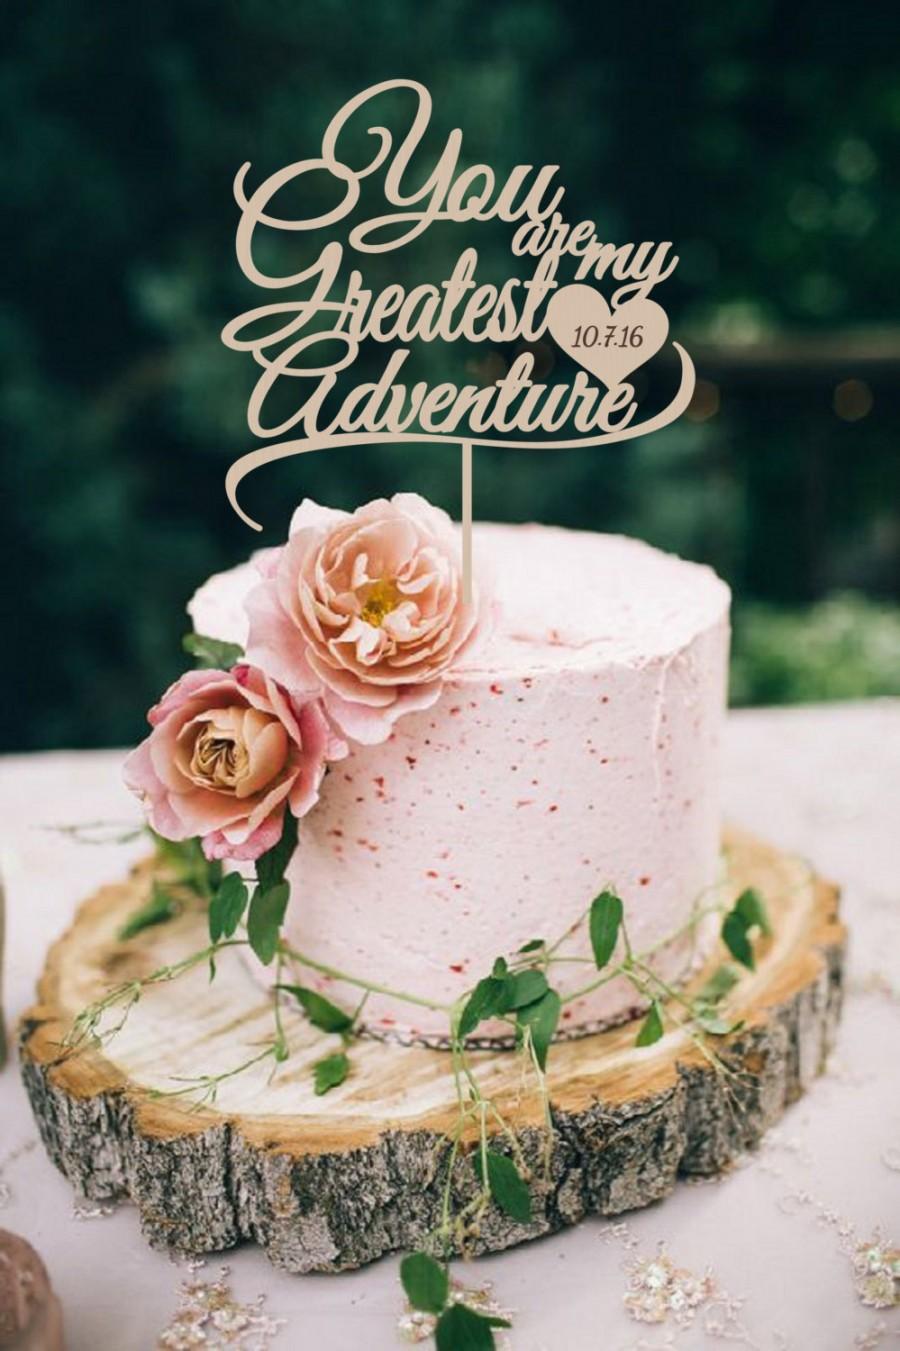 زفاف - Wedding Cake Topper  You are my greates Adventure  Cake Topper  Wood Cake Topper Silver Gold Cake Topper